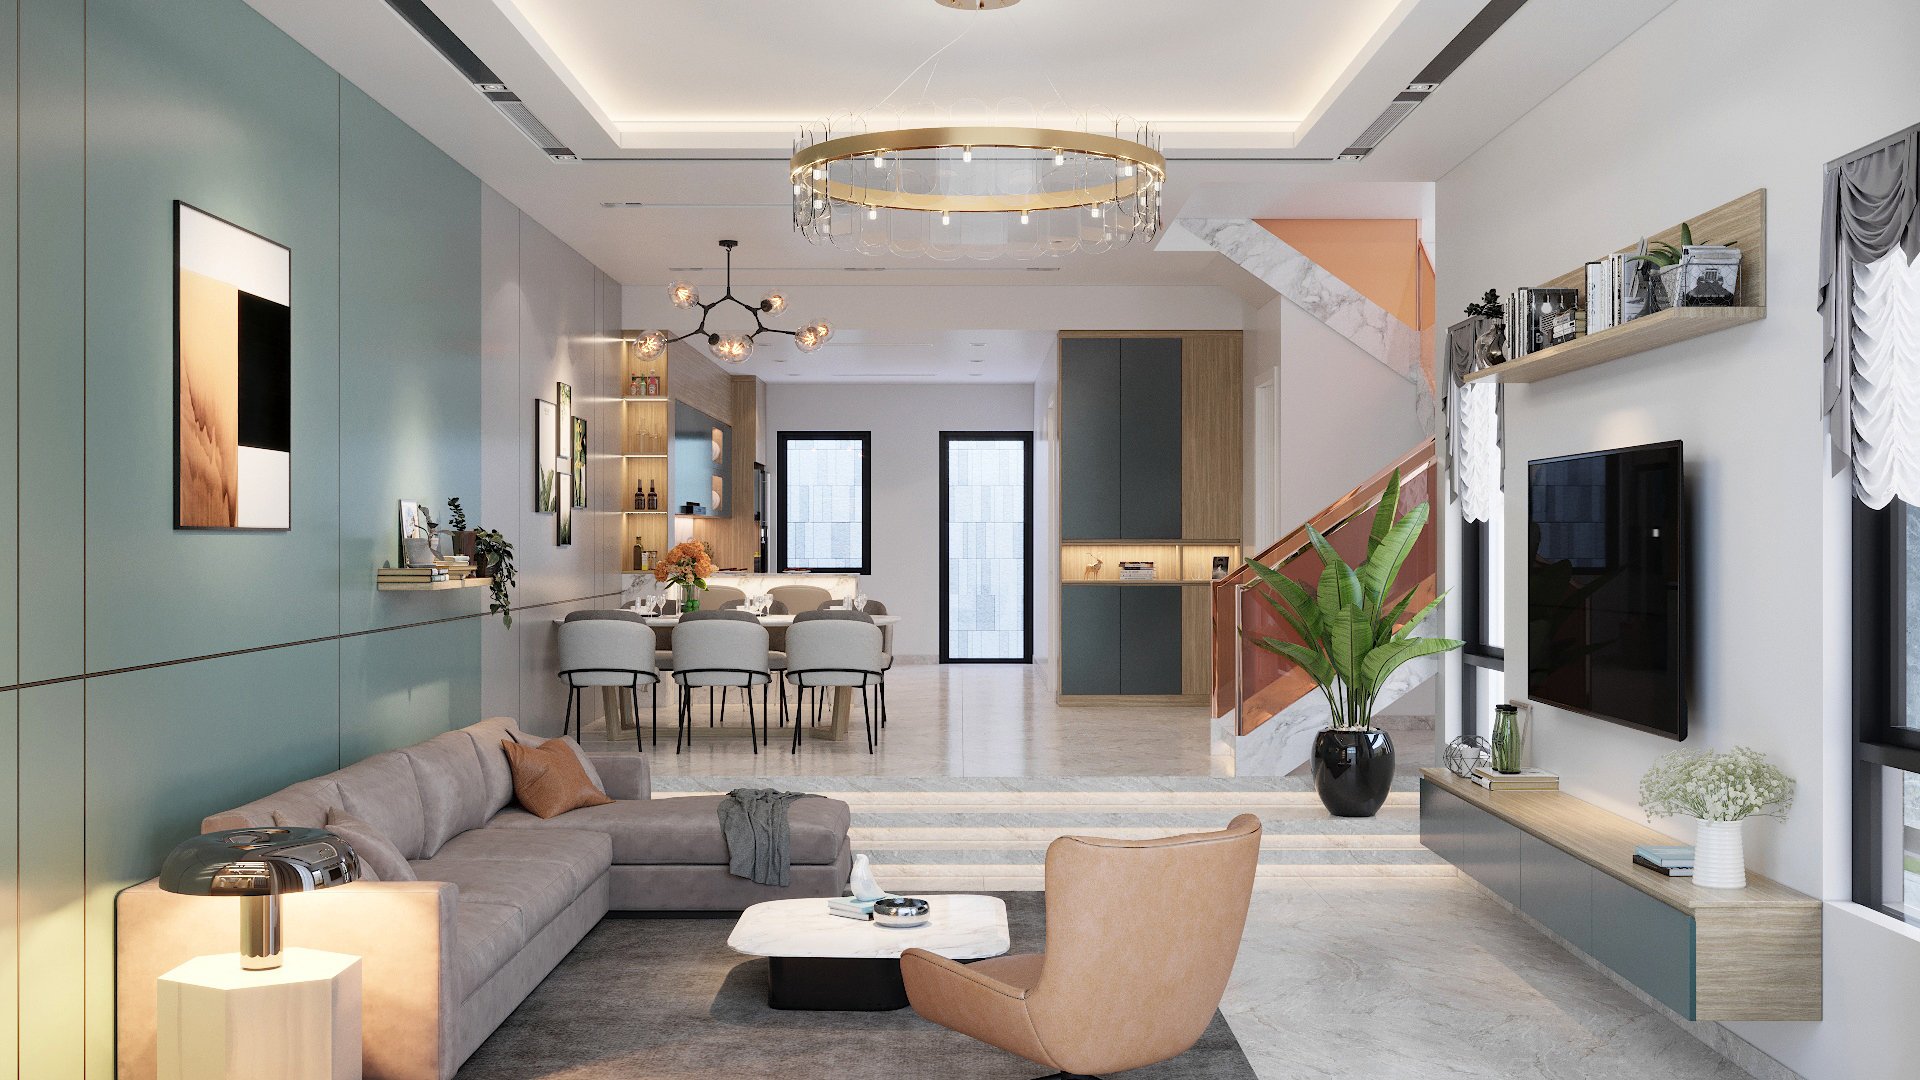 Thiết kế nội thất nhà phố hiện đại tuyệt đẹp và đầy sang trọng tại TP Hồ  Chí Minh  Xây dựng thiết kế sửa chữa nhà ở chung cư đô thị